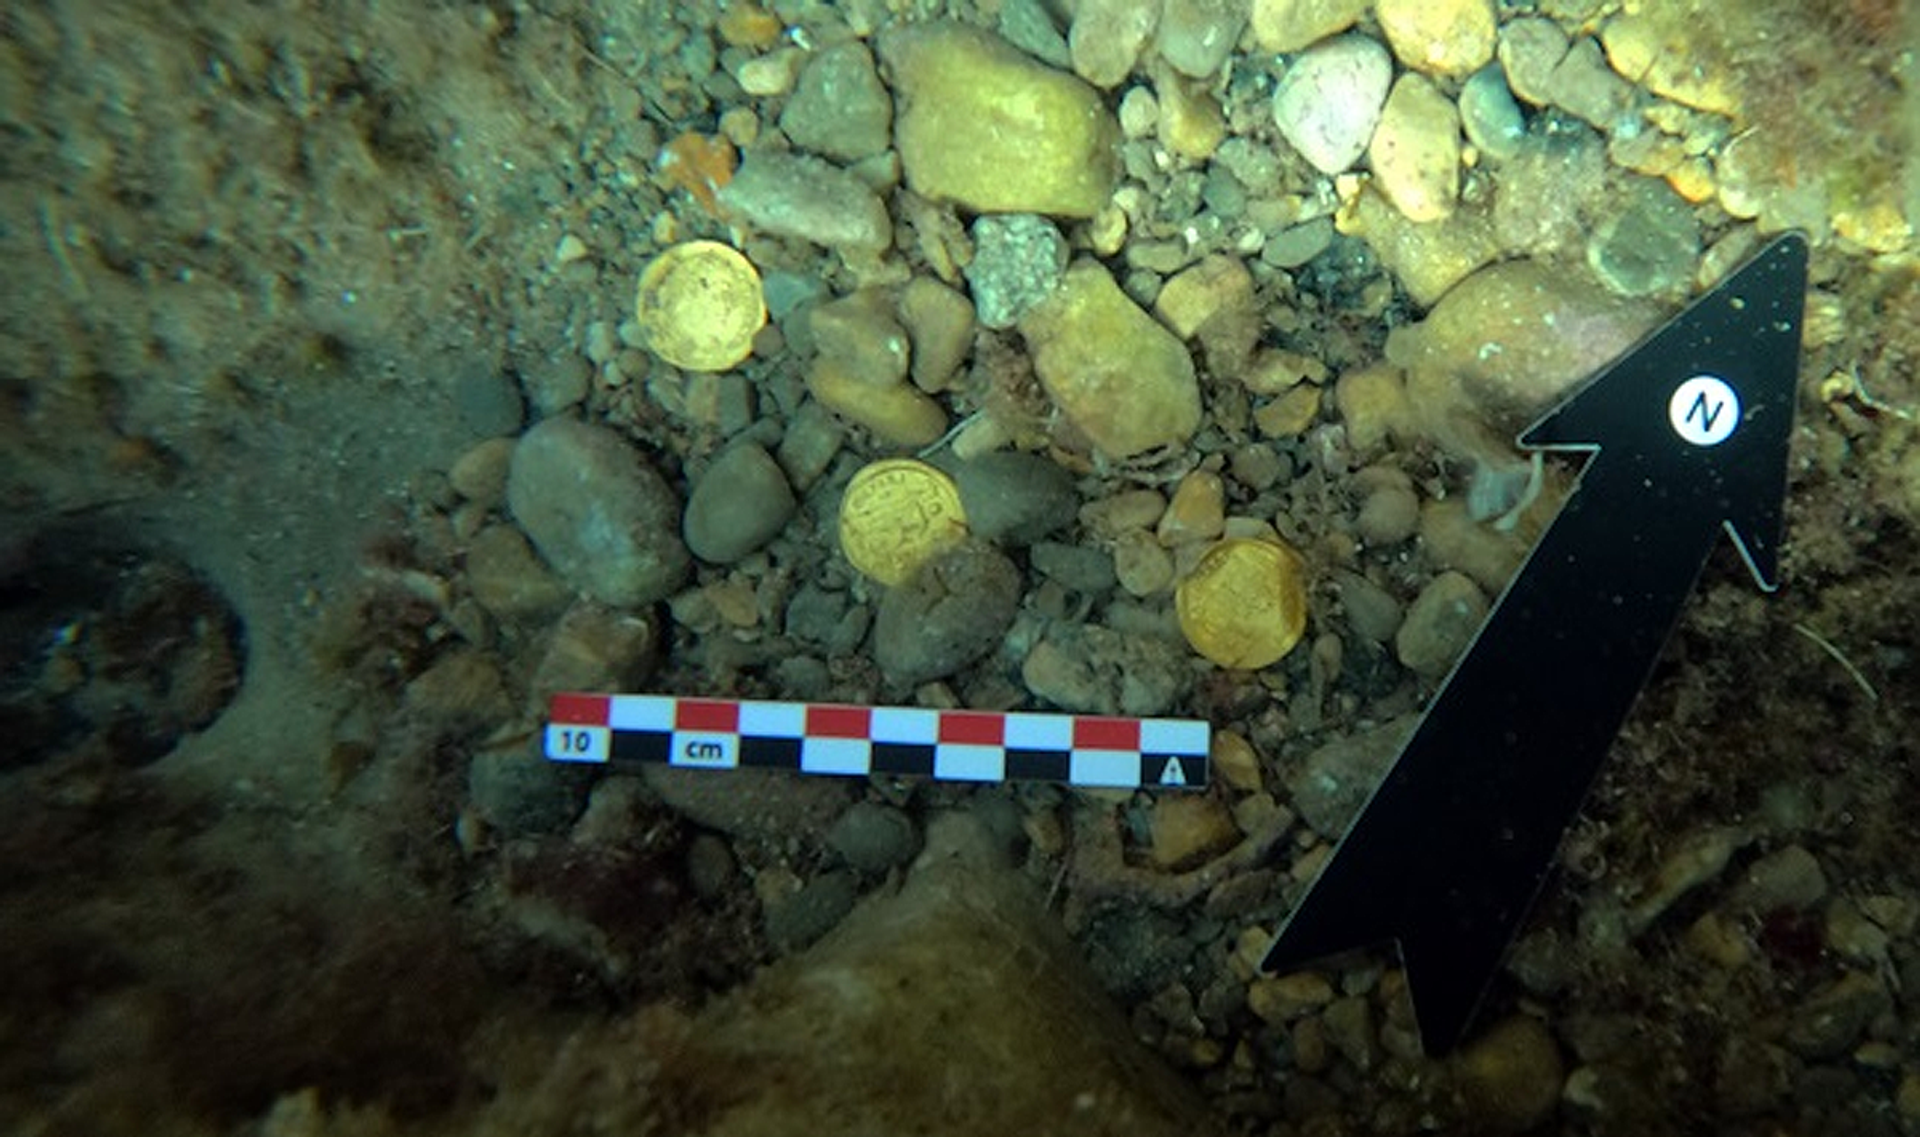 Moedas de ouro romanas encontradas no fundo do mar ao largo da costa de Alicante, na Espanha - Sputnik Brasil, 1920, 09.11.2021